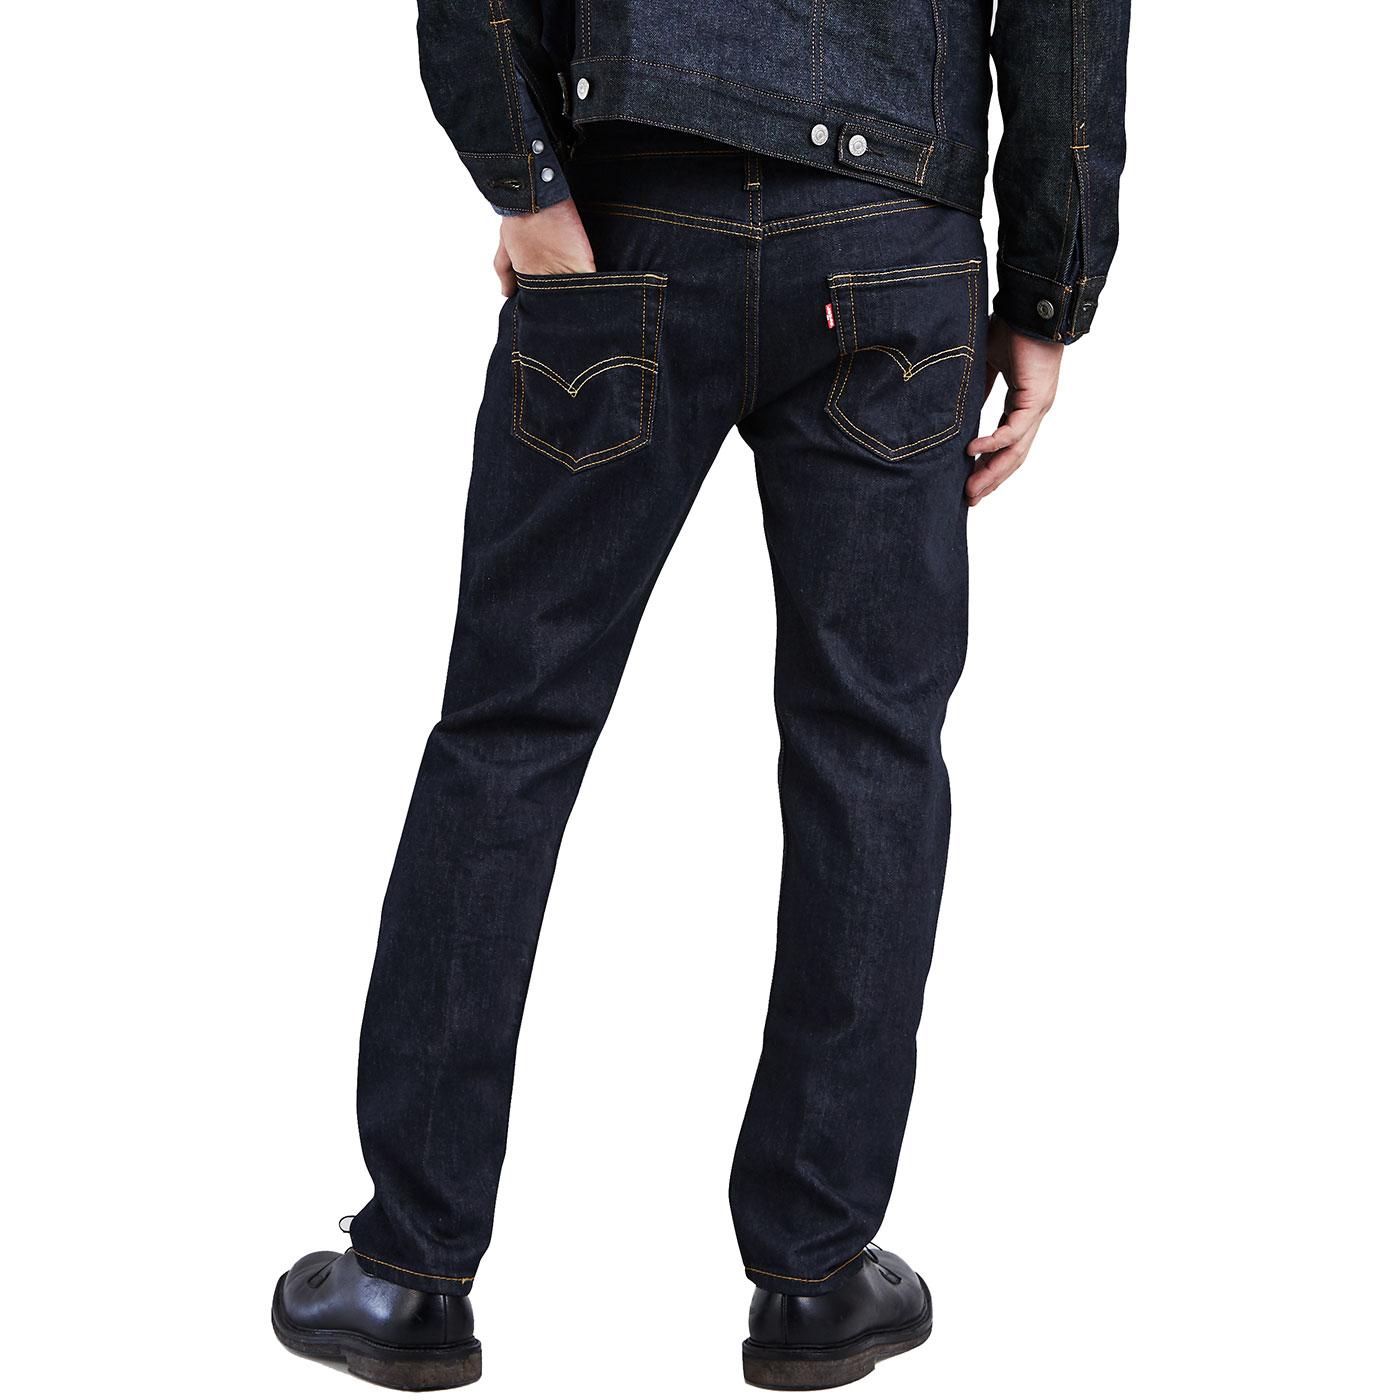 LEVI'S 502 Taper Fit Stretch Denim Jeans in Rock Cod